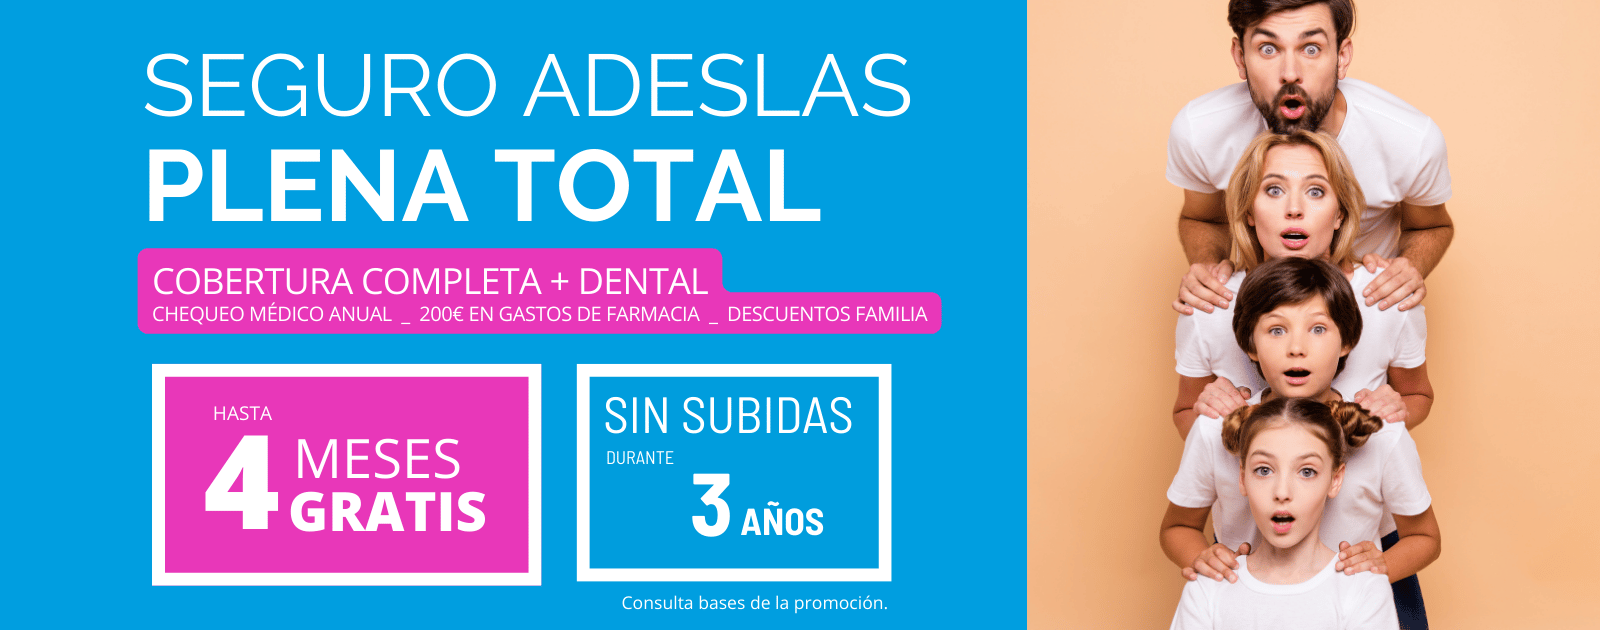 Adeslas Plena Total El seguro mas completo y al mejor precio de Adeslas ahora con hasta 4 meses gratis